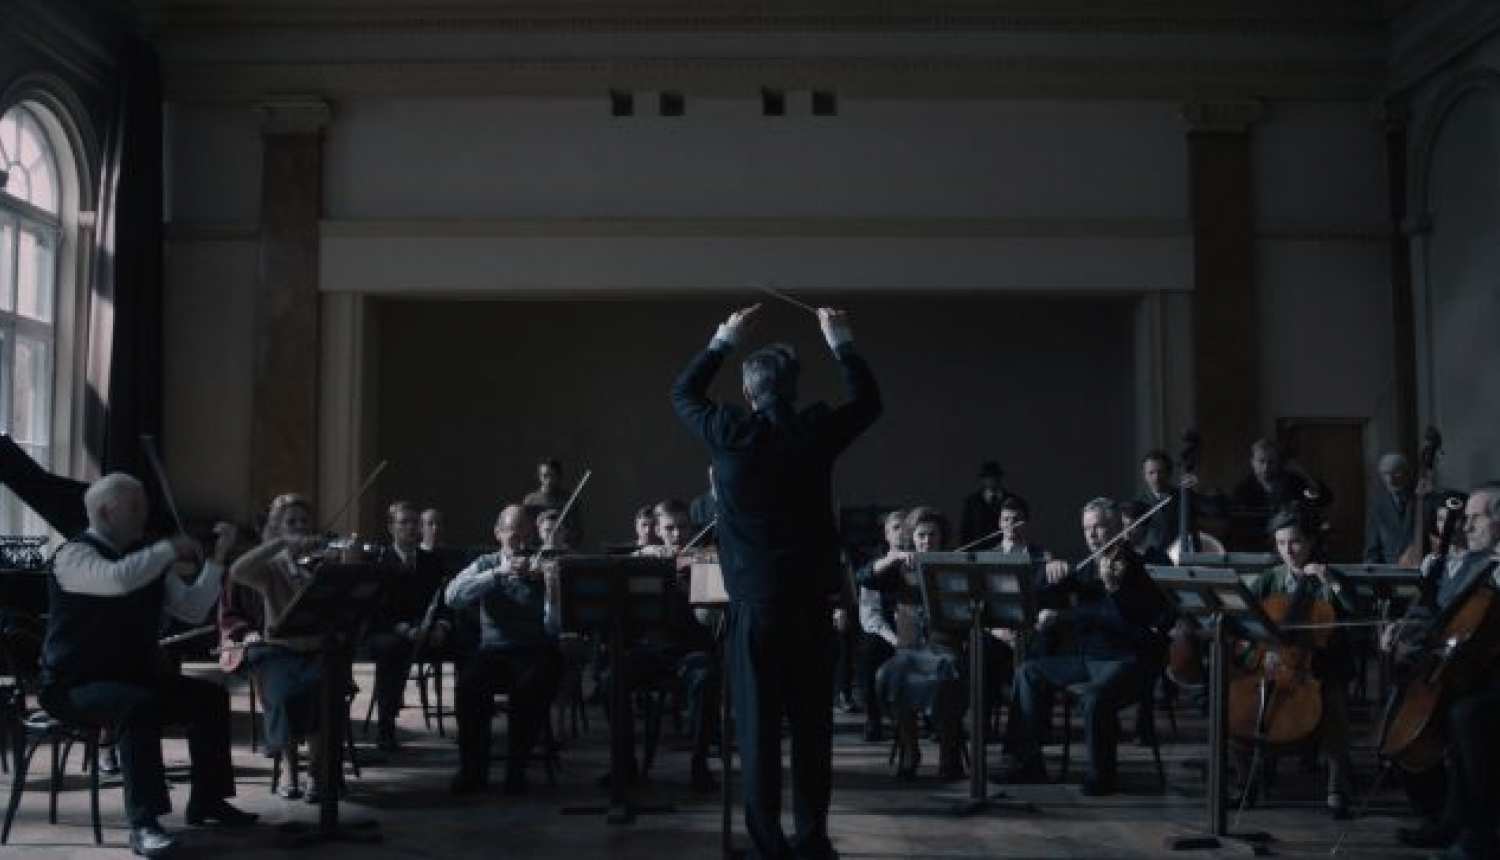 Dokumentālā filma “Ļeņingradas simfonija” un saruna par Šostakoviču